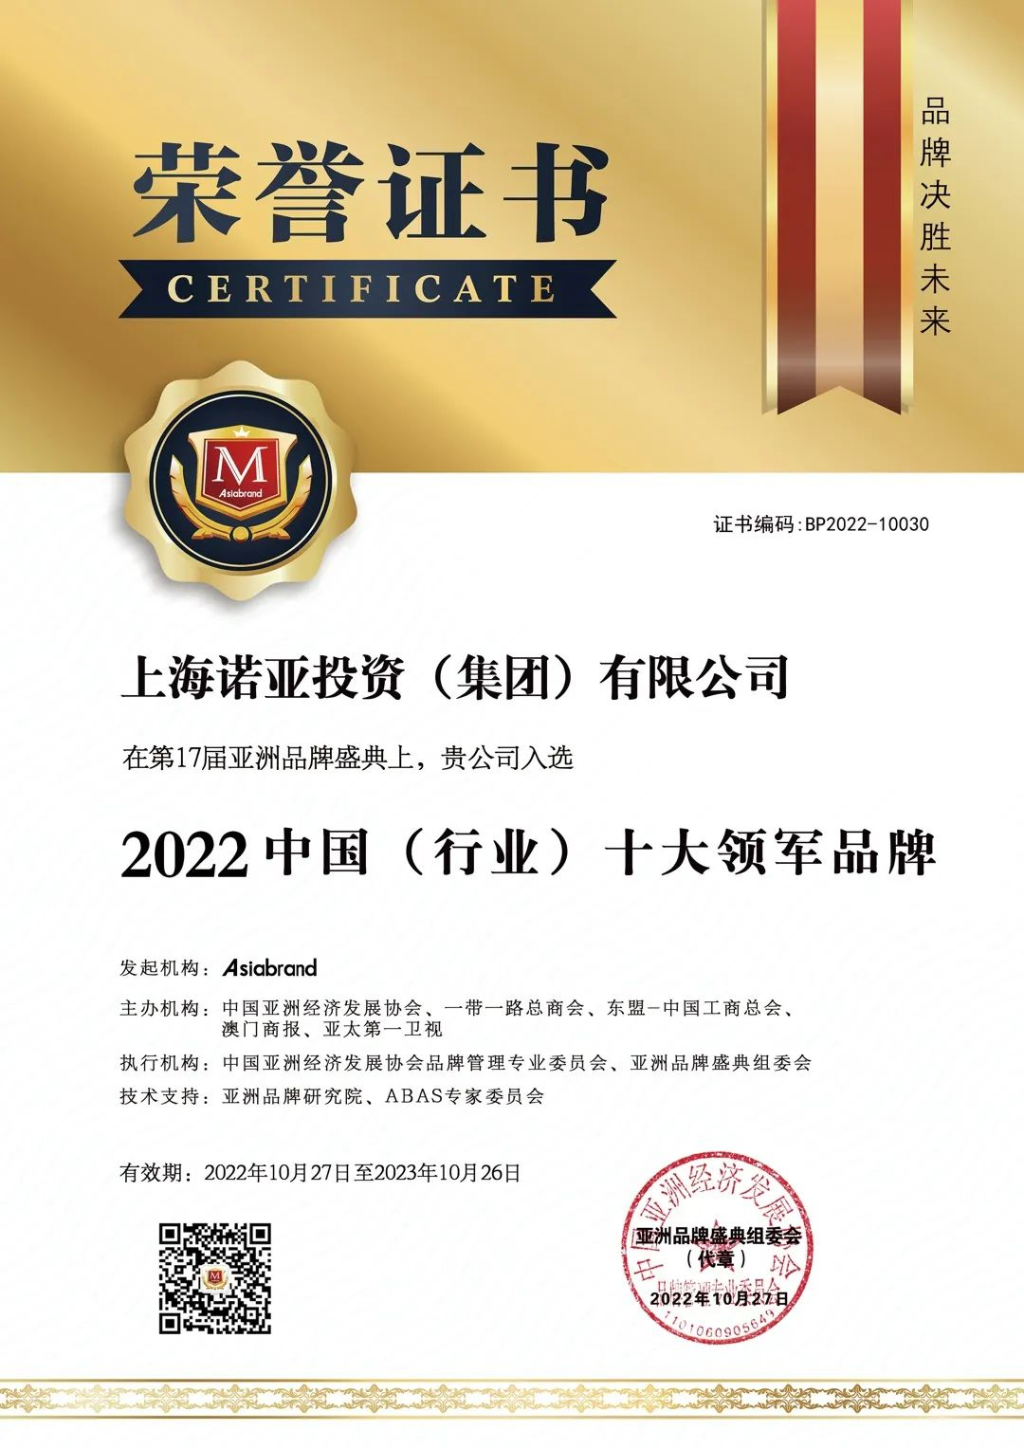 诺亚财富荣获“2022中国（行业）十大领军品牌”奖项